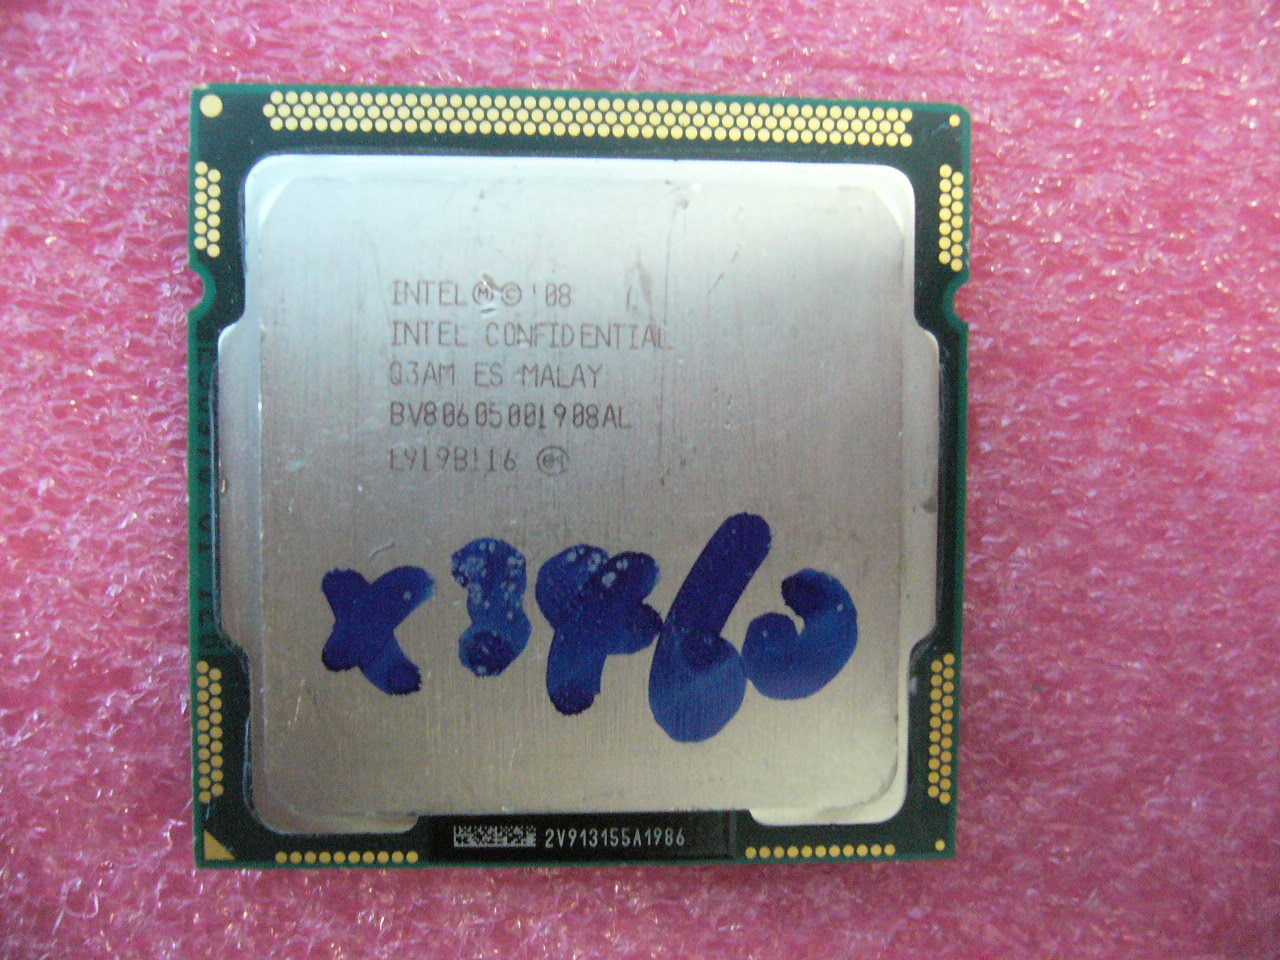 QTY 1x INTEL Xeon ES CPU X3460 2.80GHZ/8MB LGA1156 Q3AM BV80605001908AL - zum Schließen ins Bild klicken